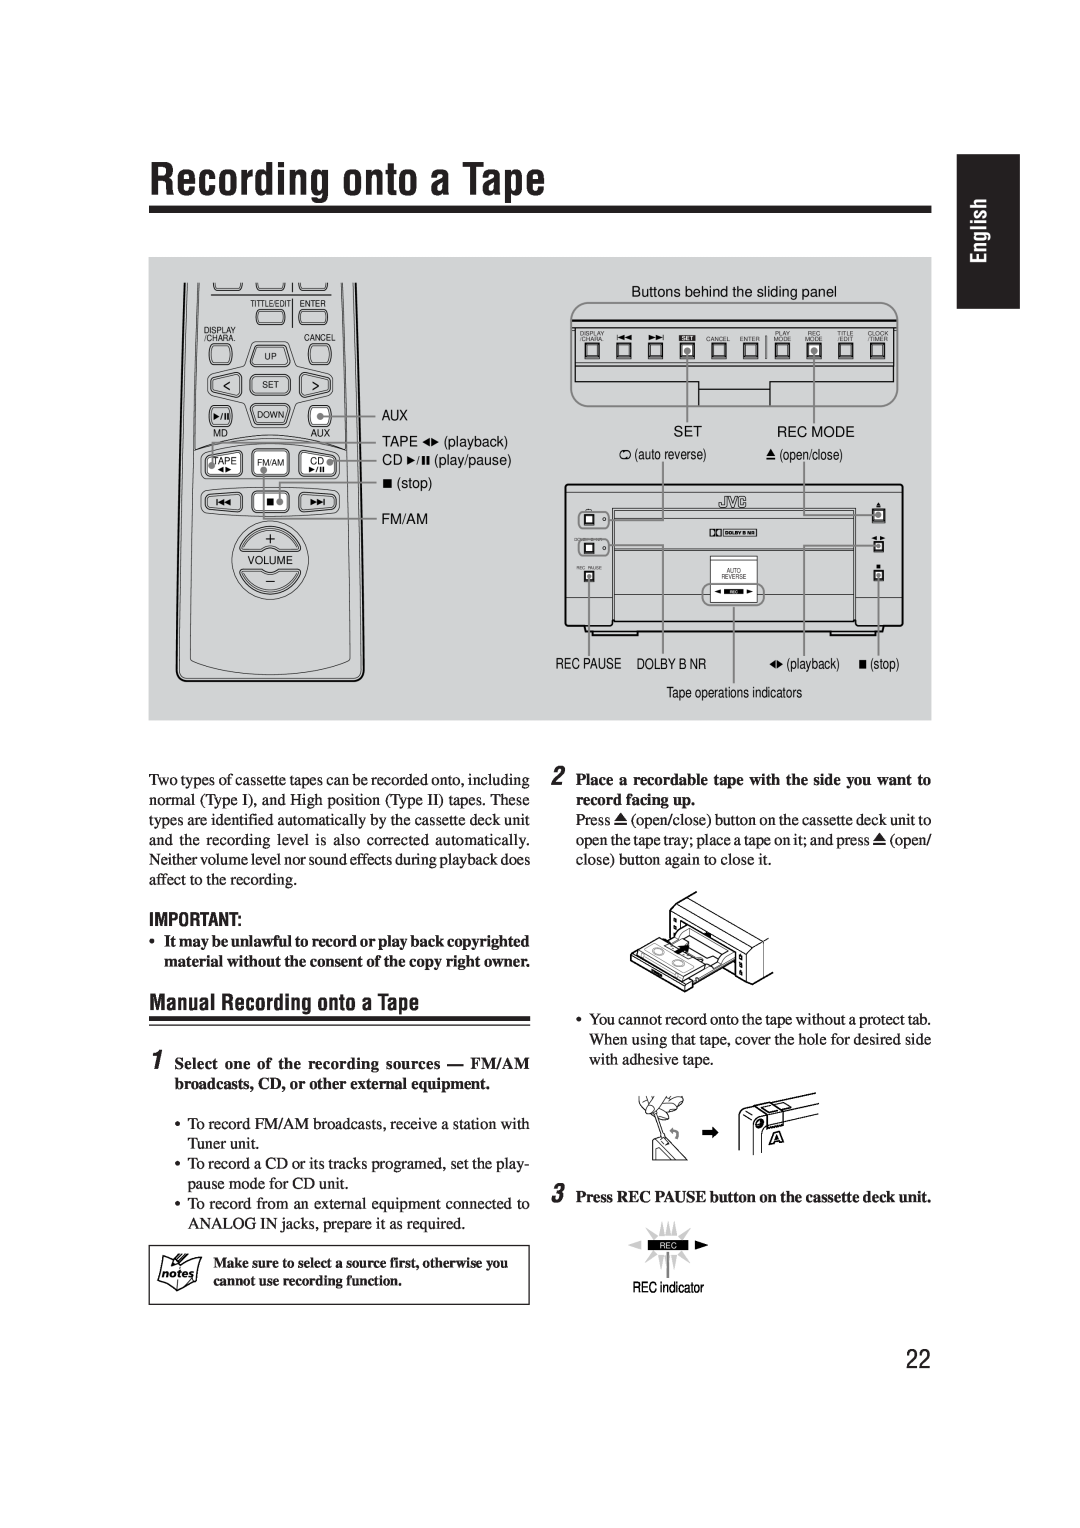 JVC AX-UXG66, TD-UXG66, SP-UXG66, XT-UXG66 manual Manual Recording onto a Tape, English 